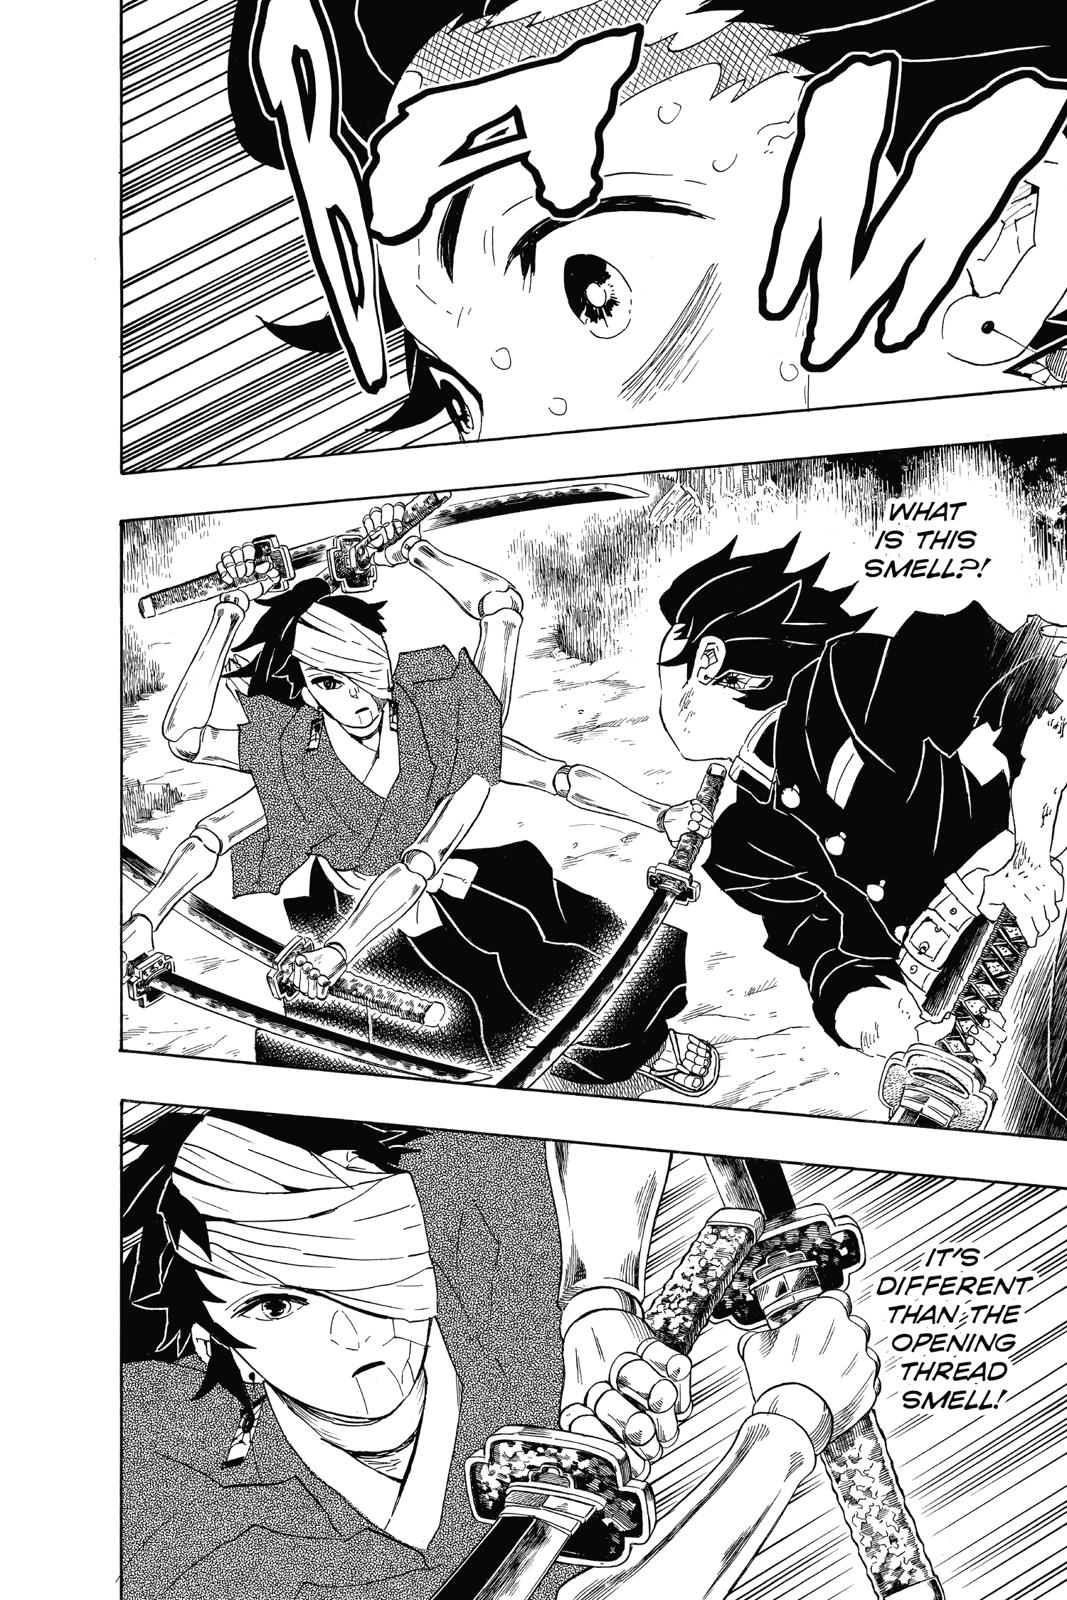 Demon Slayer Manga Manga Chapter - 104 - image 7